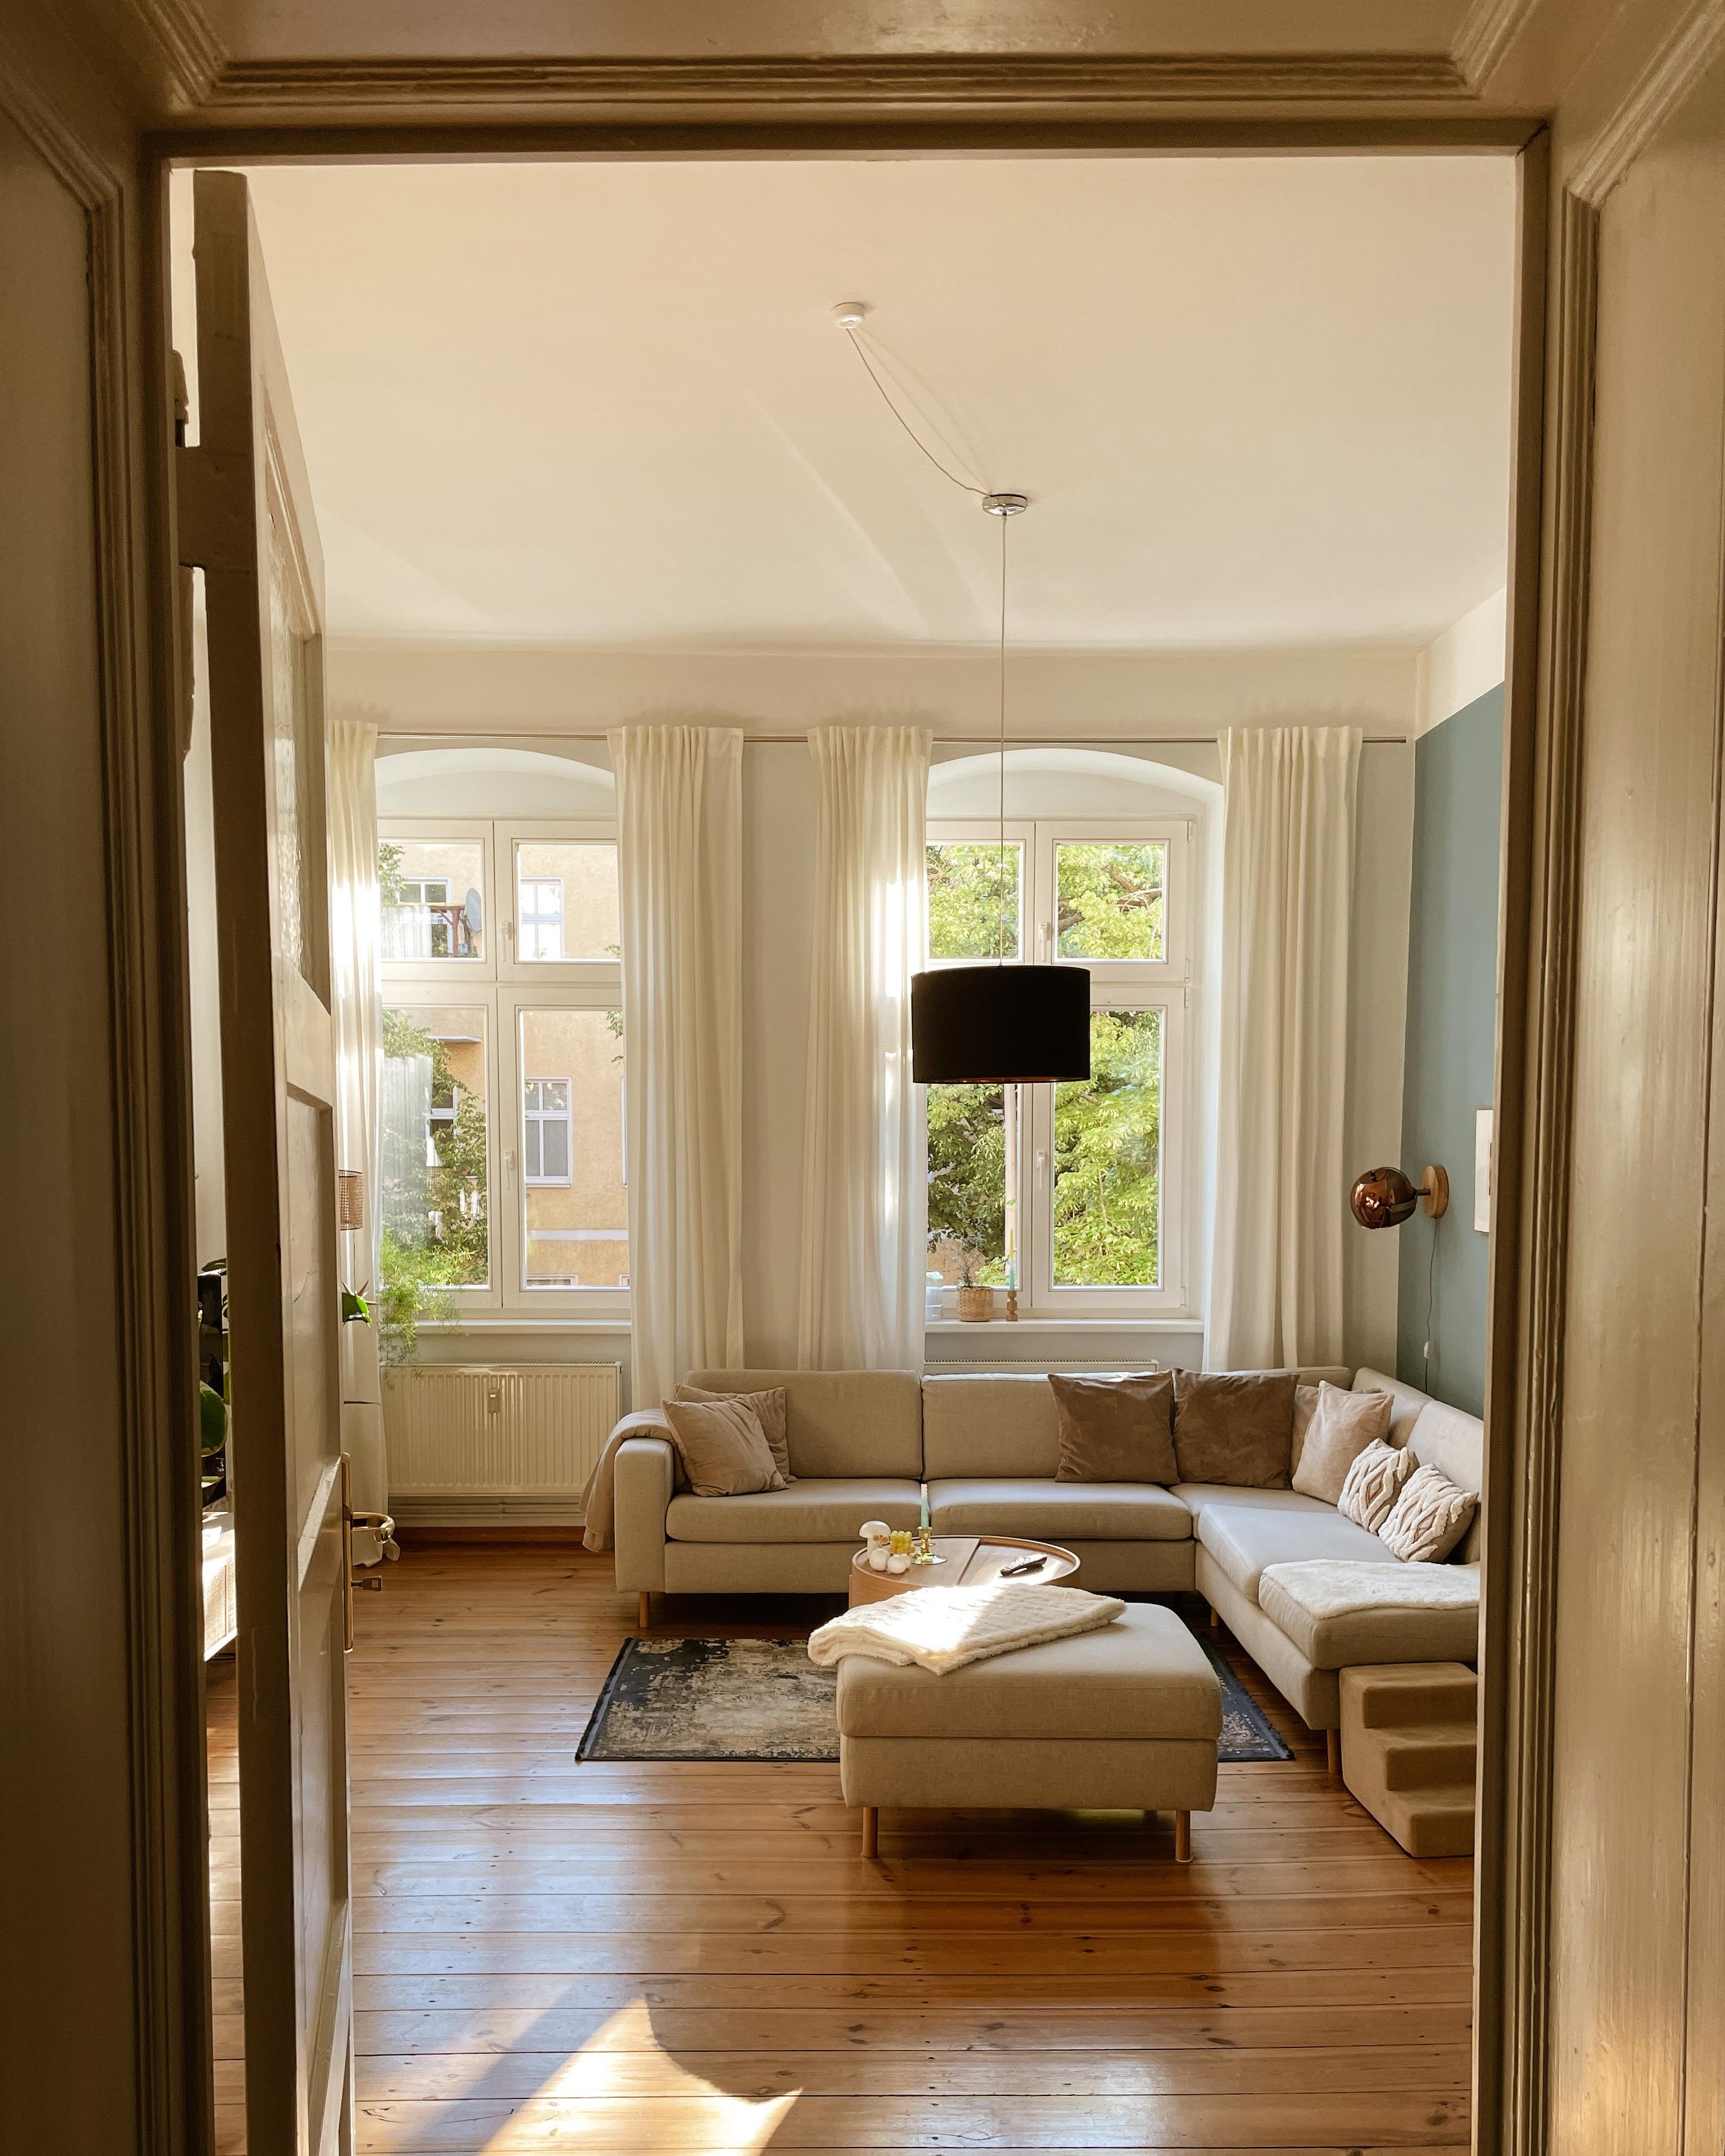 Willkommen!
#scandinaviandesign #altbau #beige #scandi #wohnzimmer